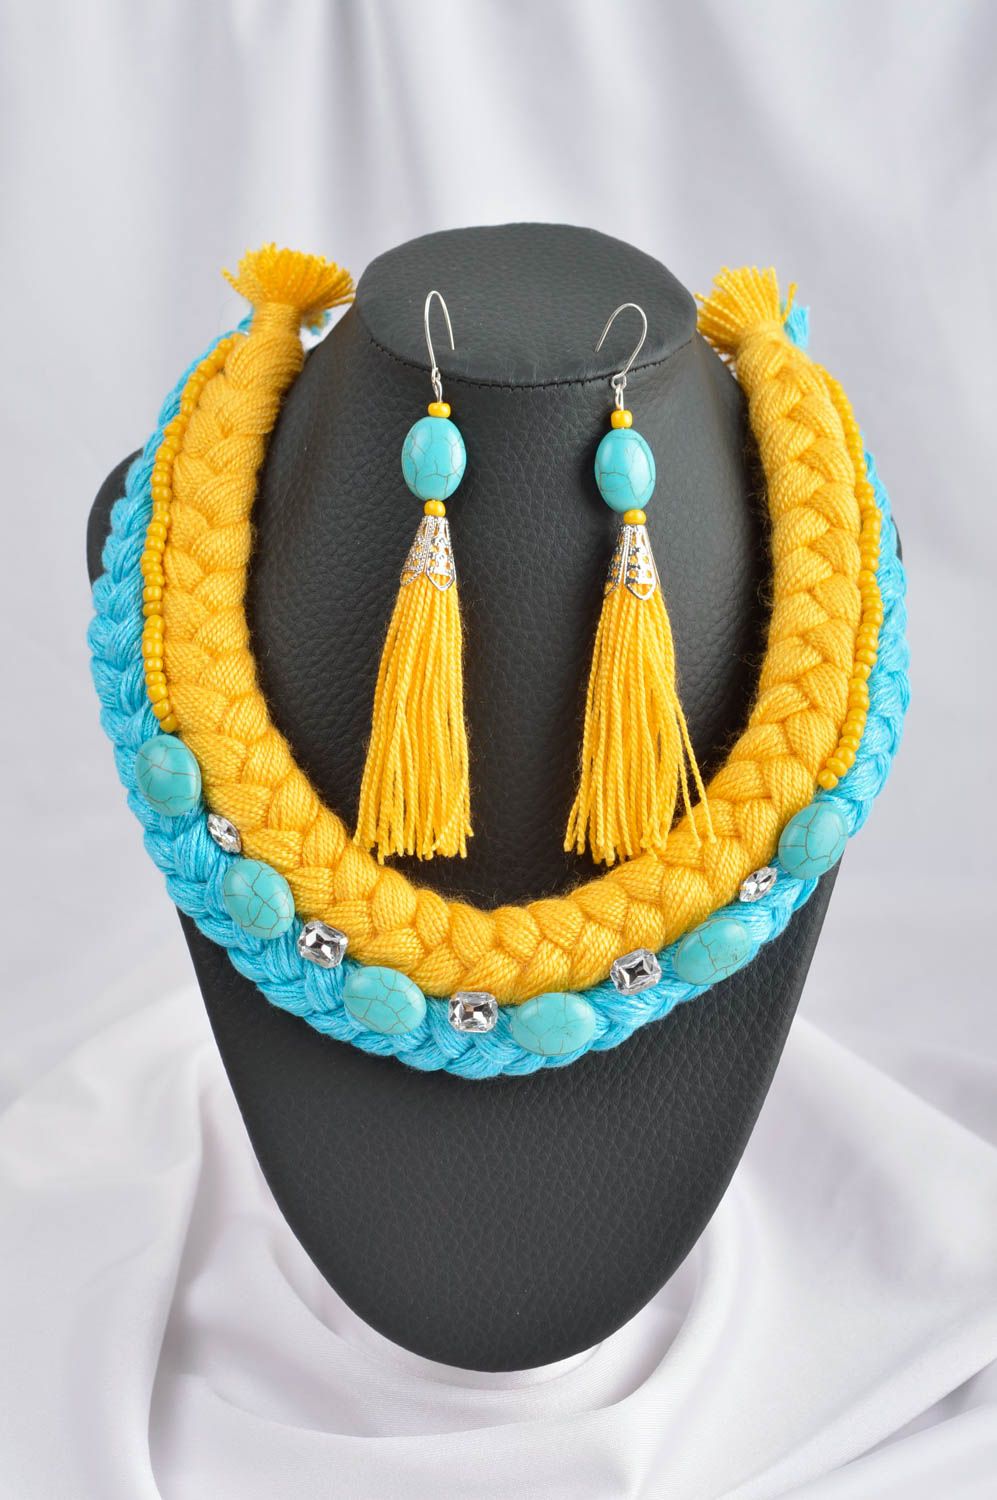 Ожерелье из ниток украшения ручной работы длинные серьги желтые с голубым фото 1